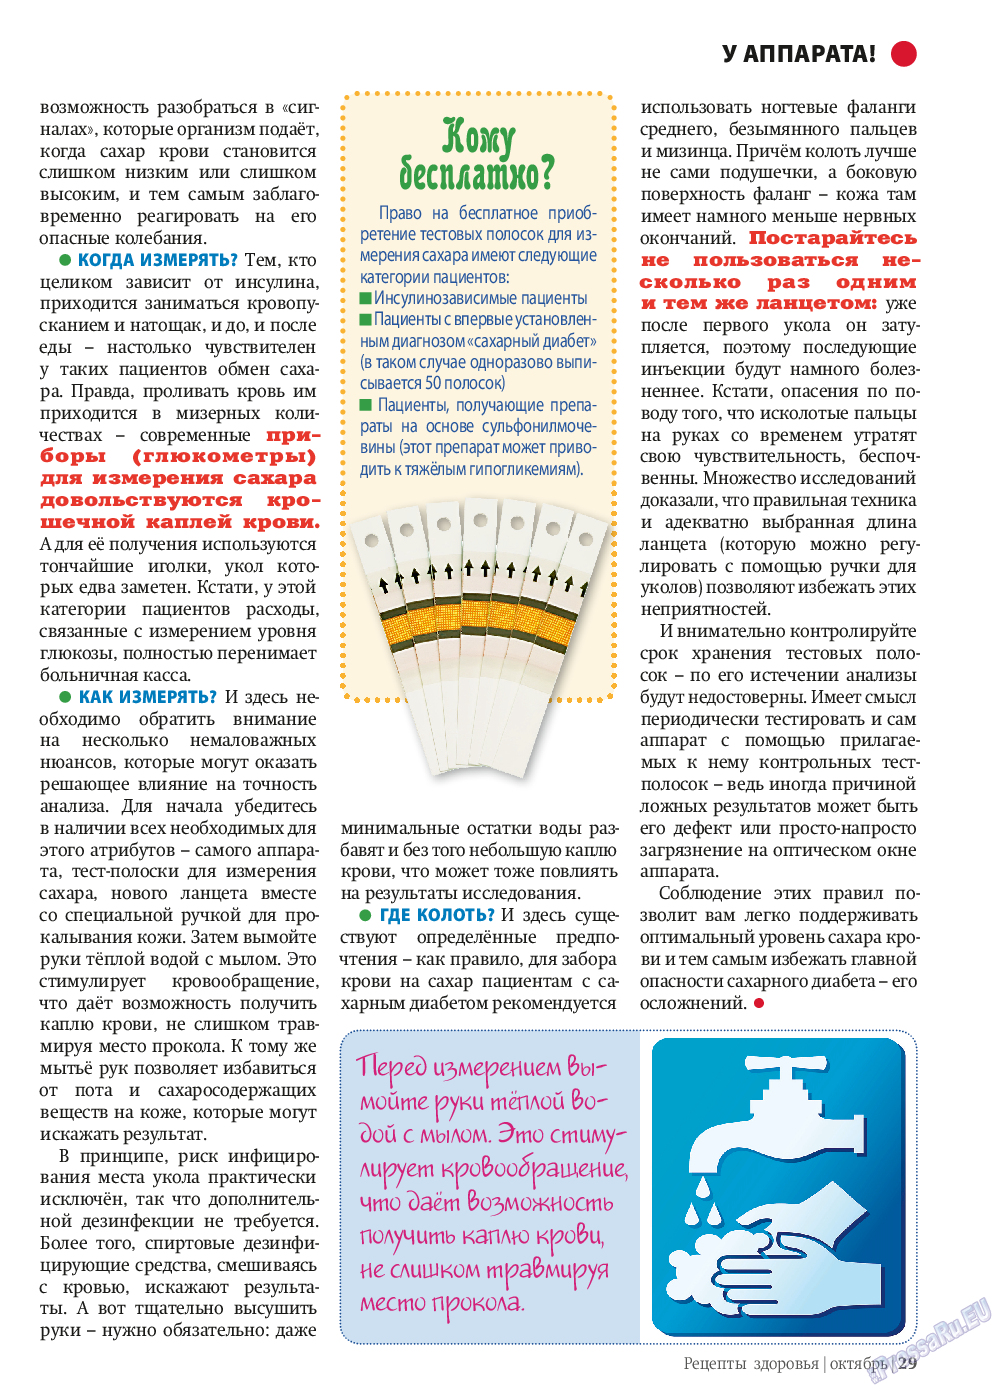 Рецепты здоровья, журнал. 2013 №10 стр.29